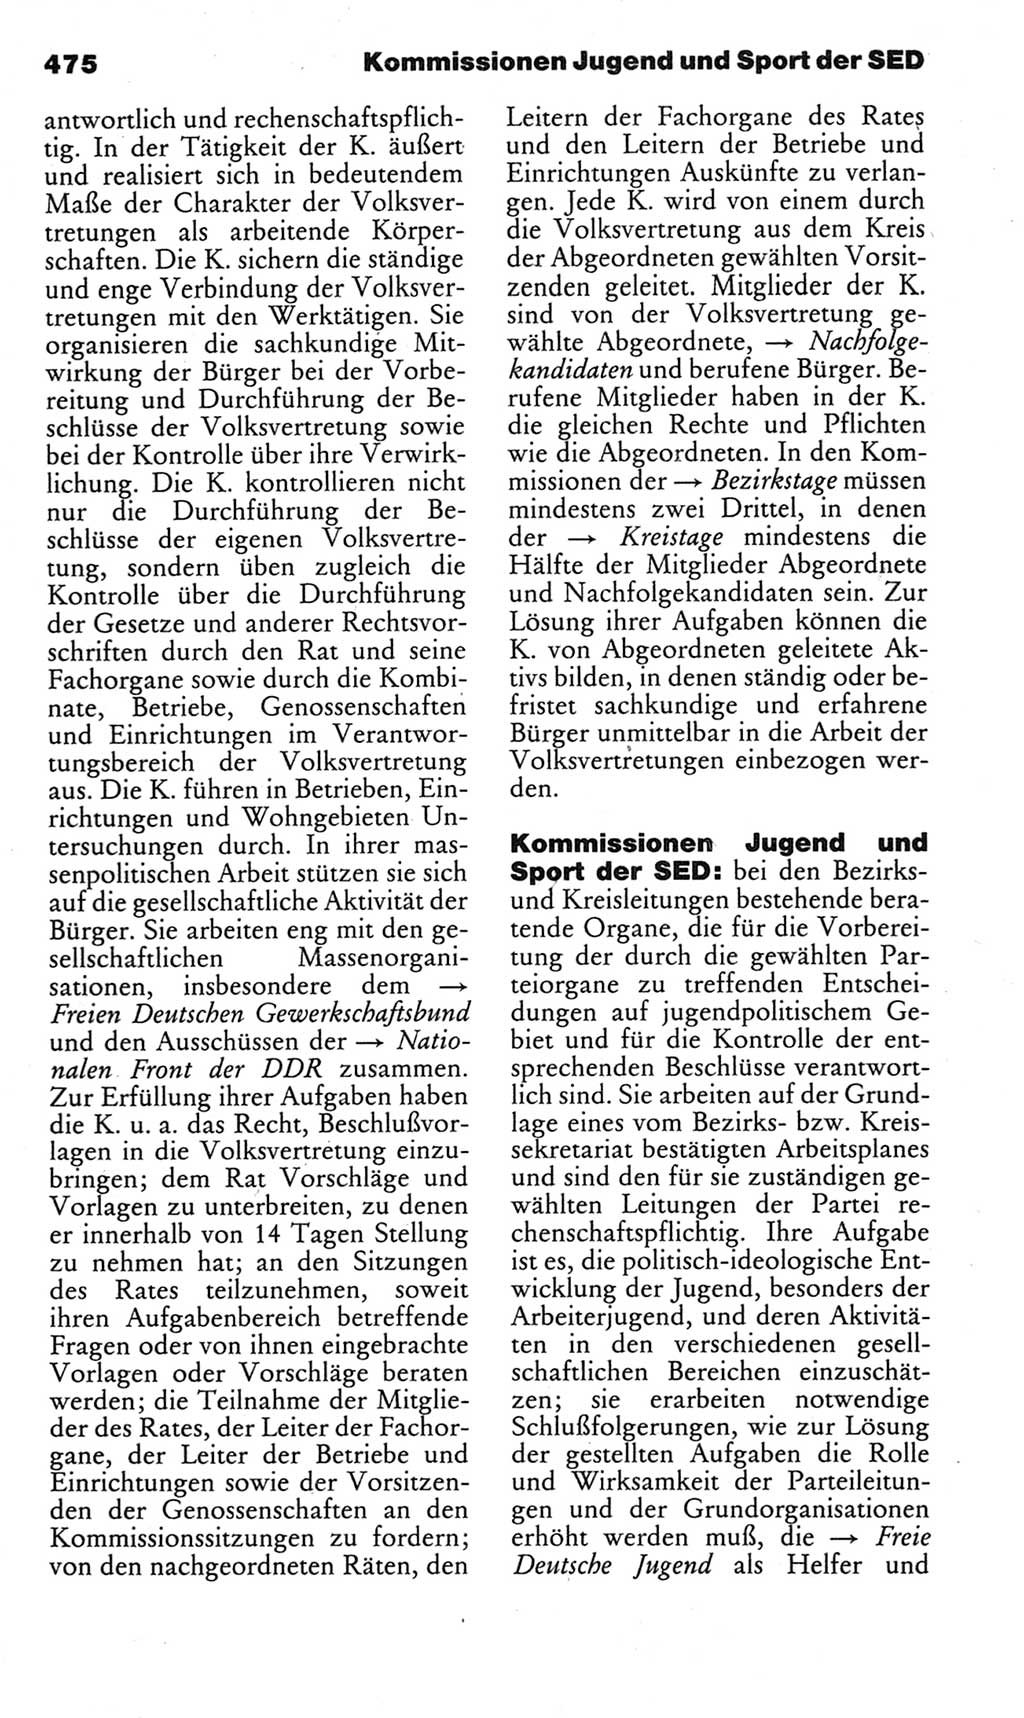 Kleines politisches Wörterbuch [Deutsche Demokratische Republik (DDR)] 1983, Seite 475 (Kl. pol. Wb. DDR 1983, S. 475)